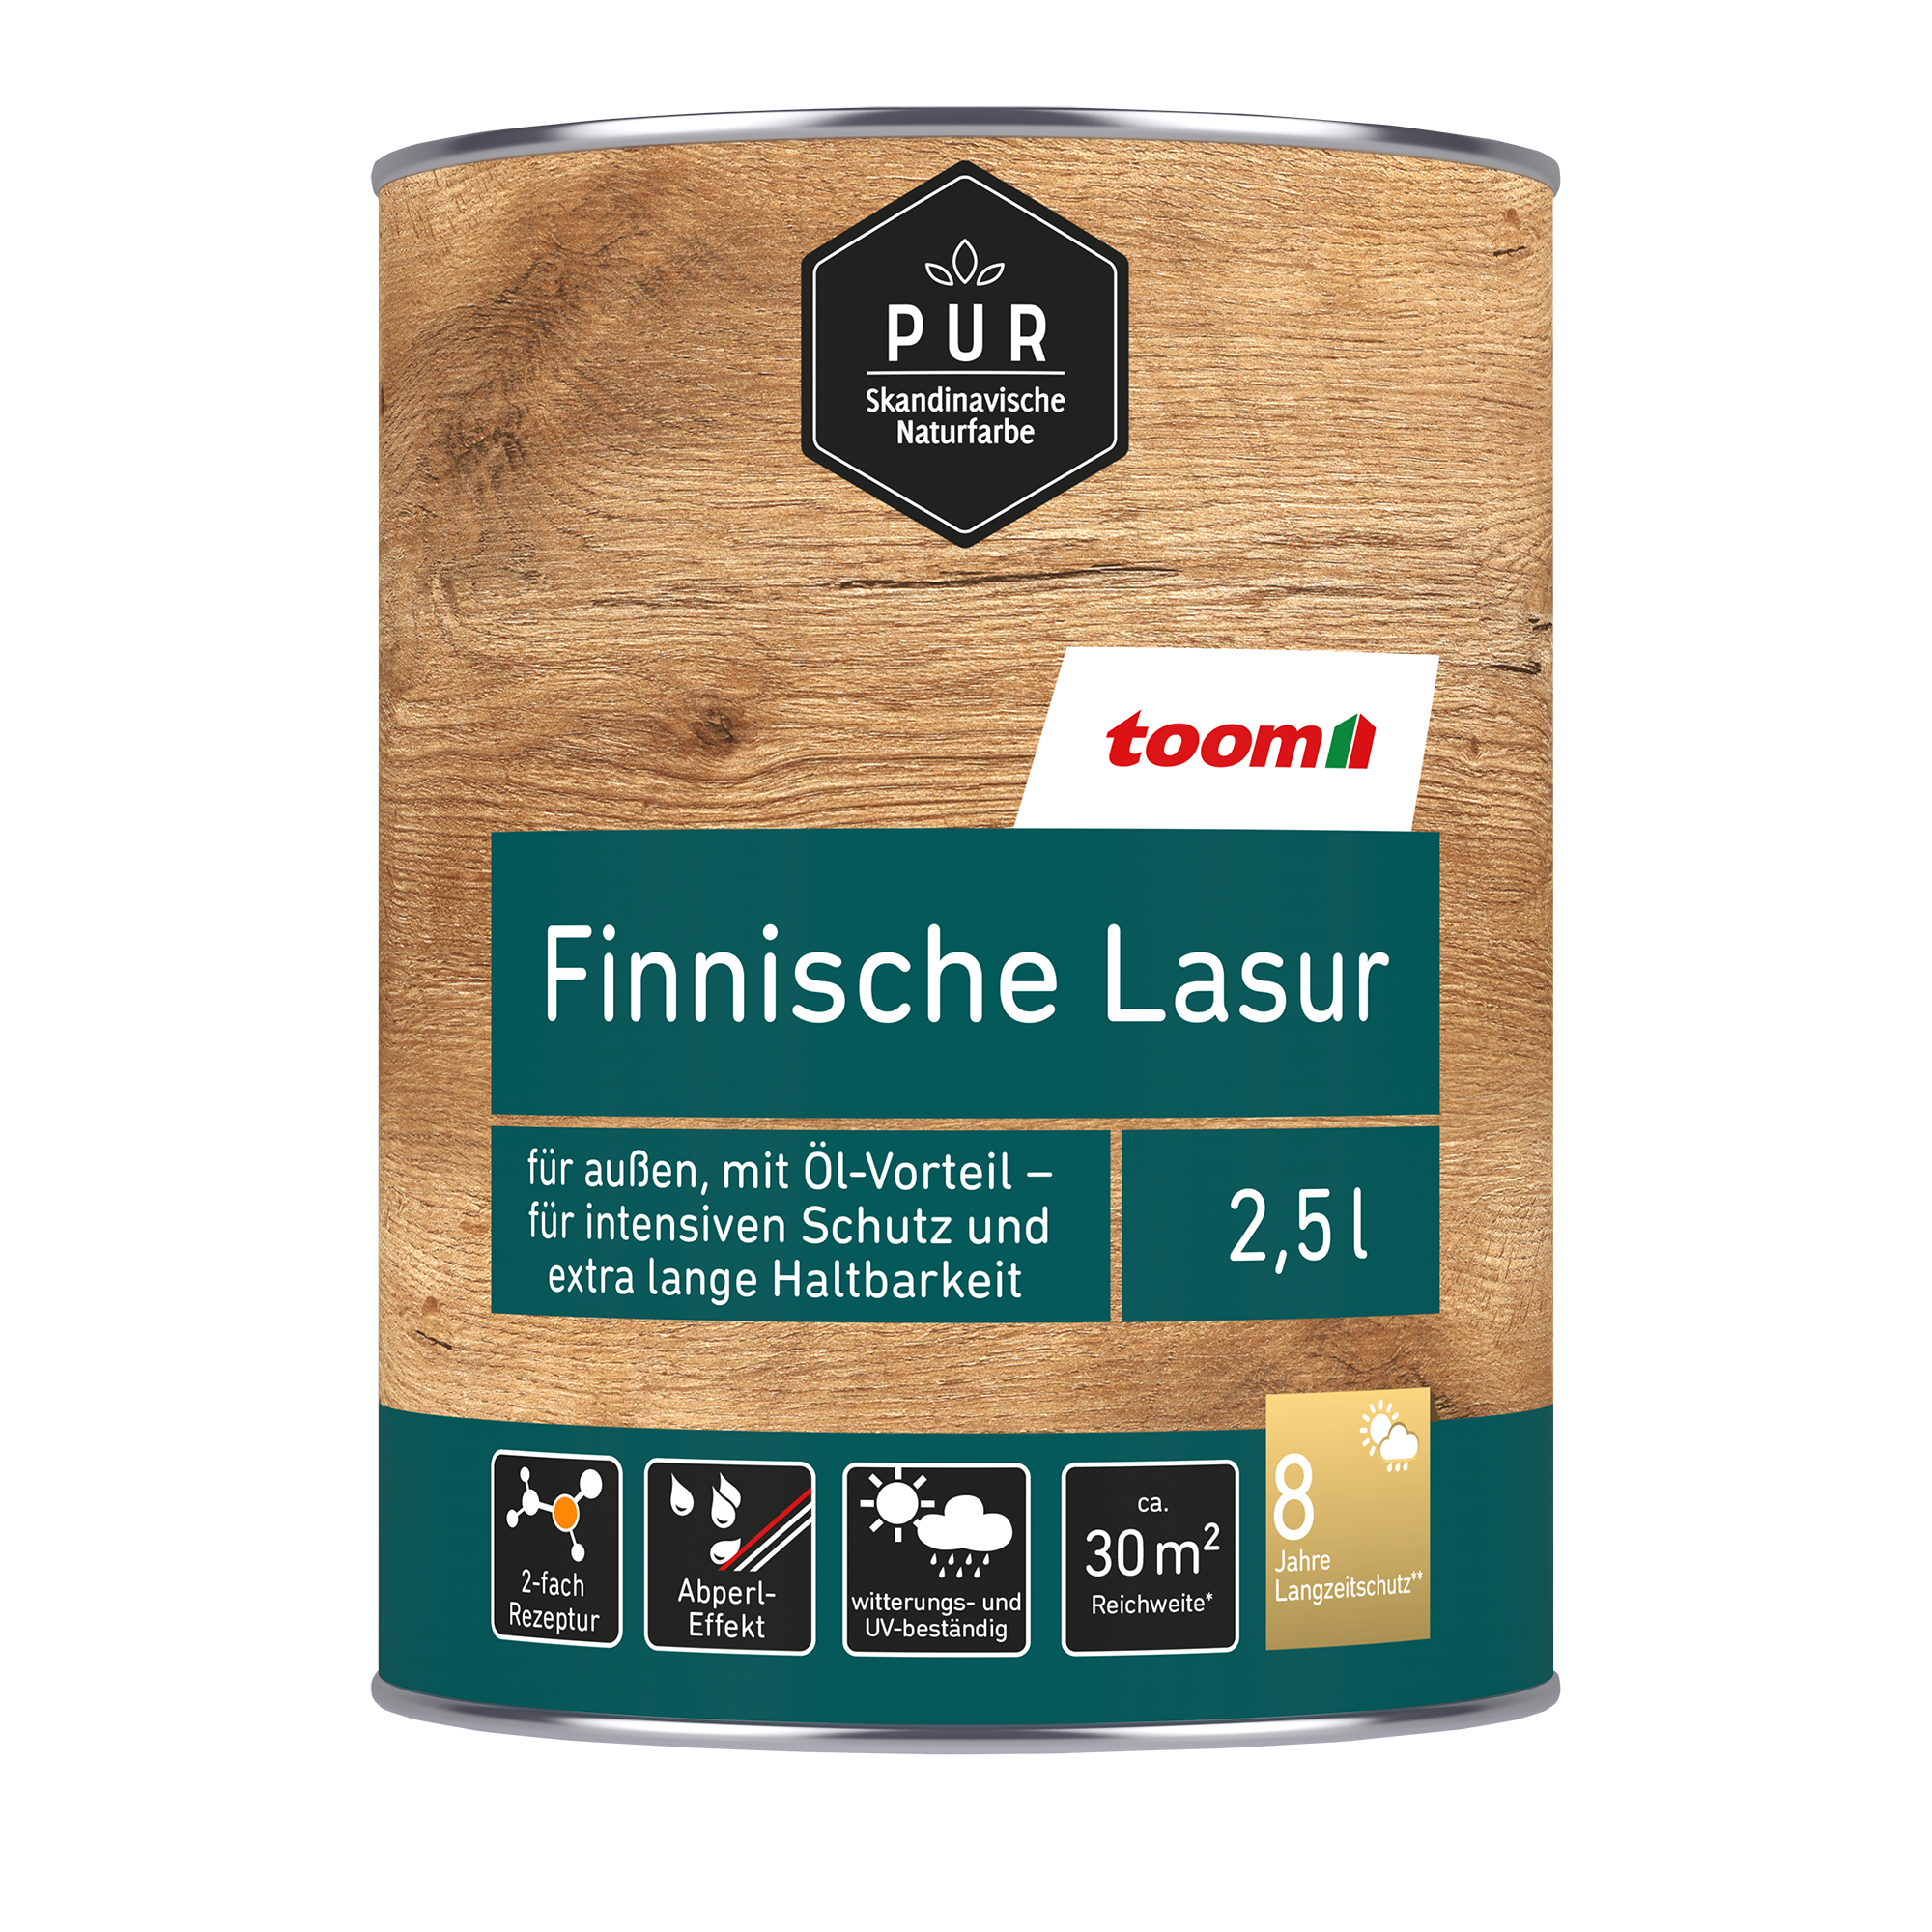 Finnische Lasur nussbaumfarben dunkel 2,5 l + product picture